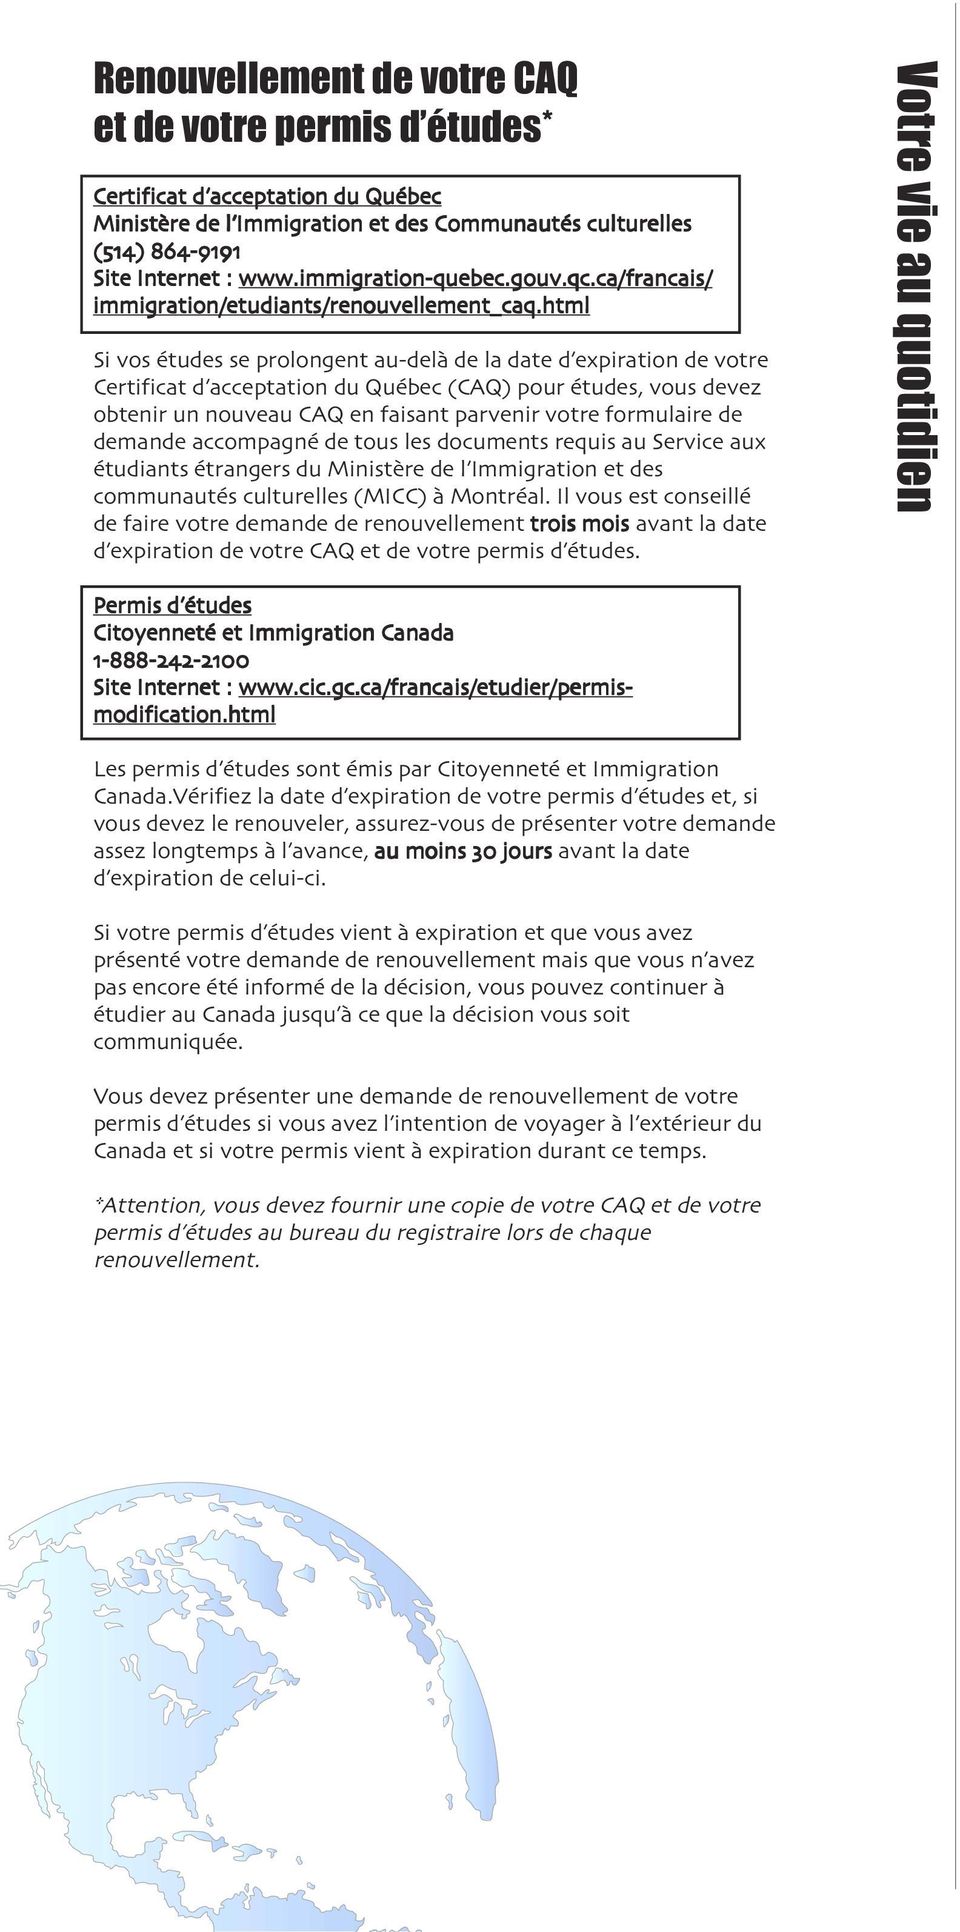 html Si vos études se prolongent au-delà de la date d expiration de votre Certificat d acceptation du Québec (CAQ) pour études, vous devez obtenir un nouveau CAQ en faisant parvenir votre formulaire